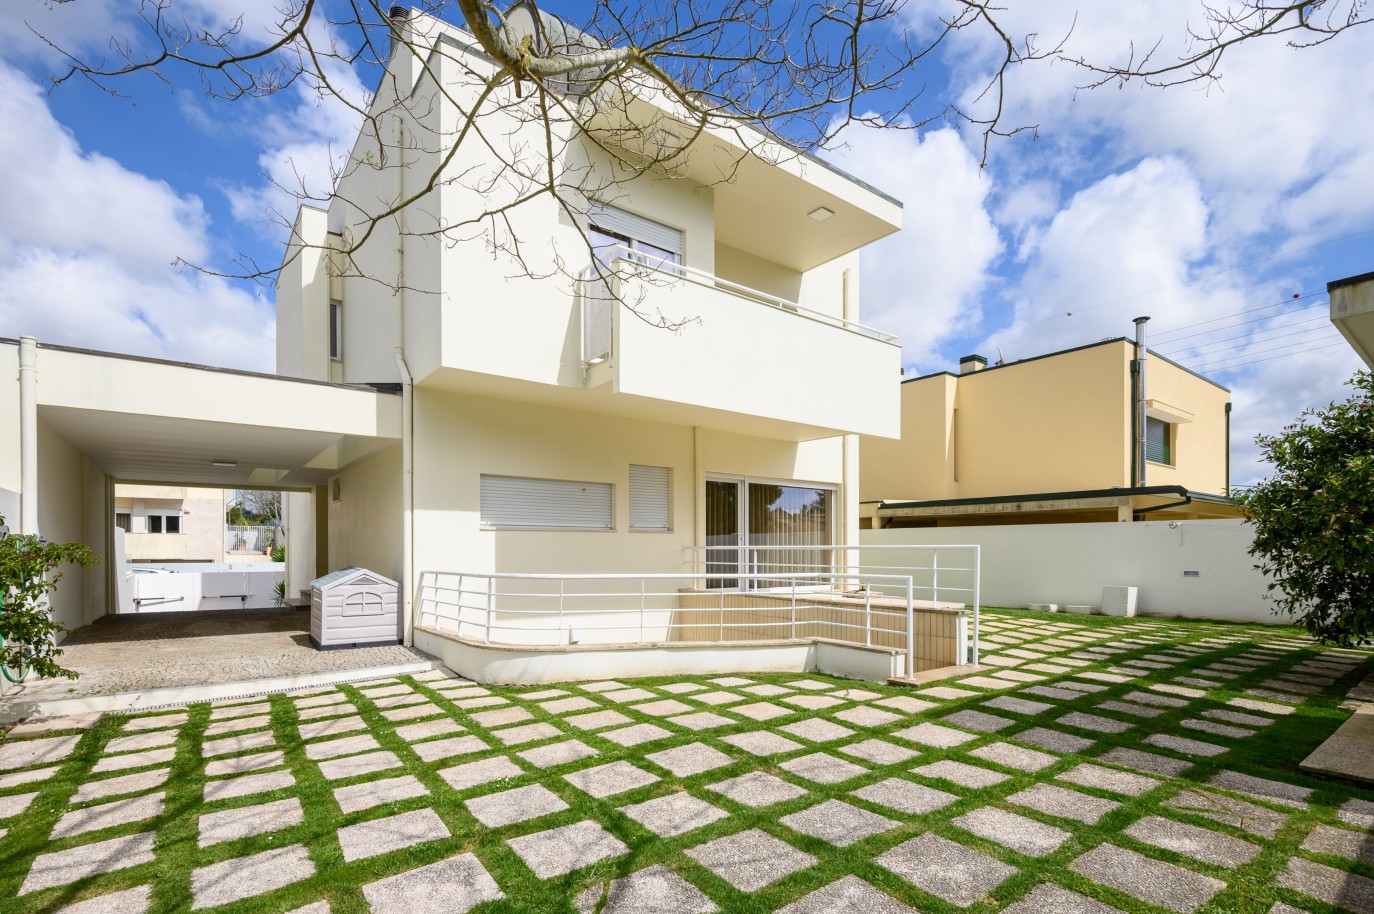 Villa de 4 dormitorios con jardín, en venta, en Moreira, Maia, Portugal_229878